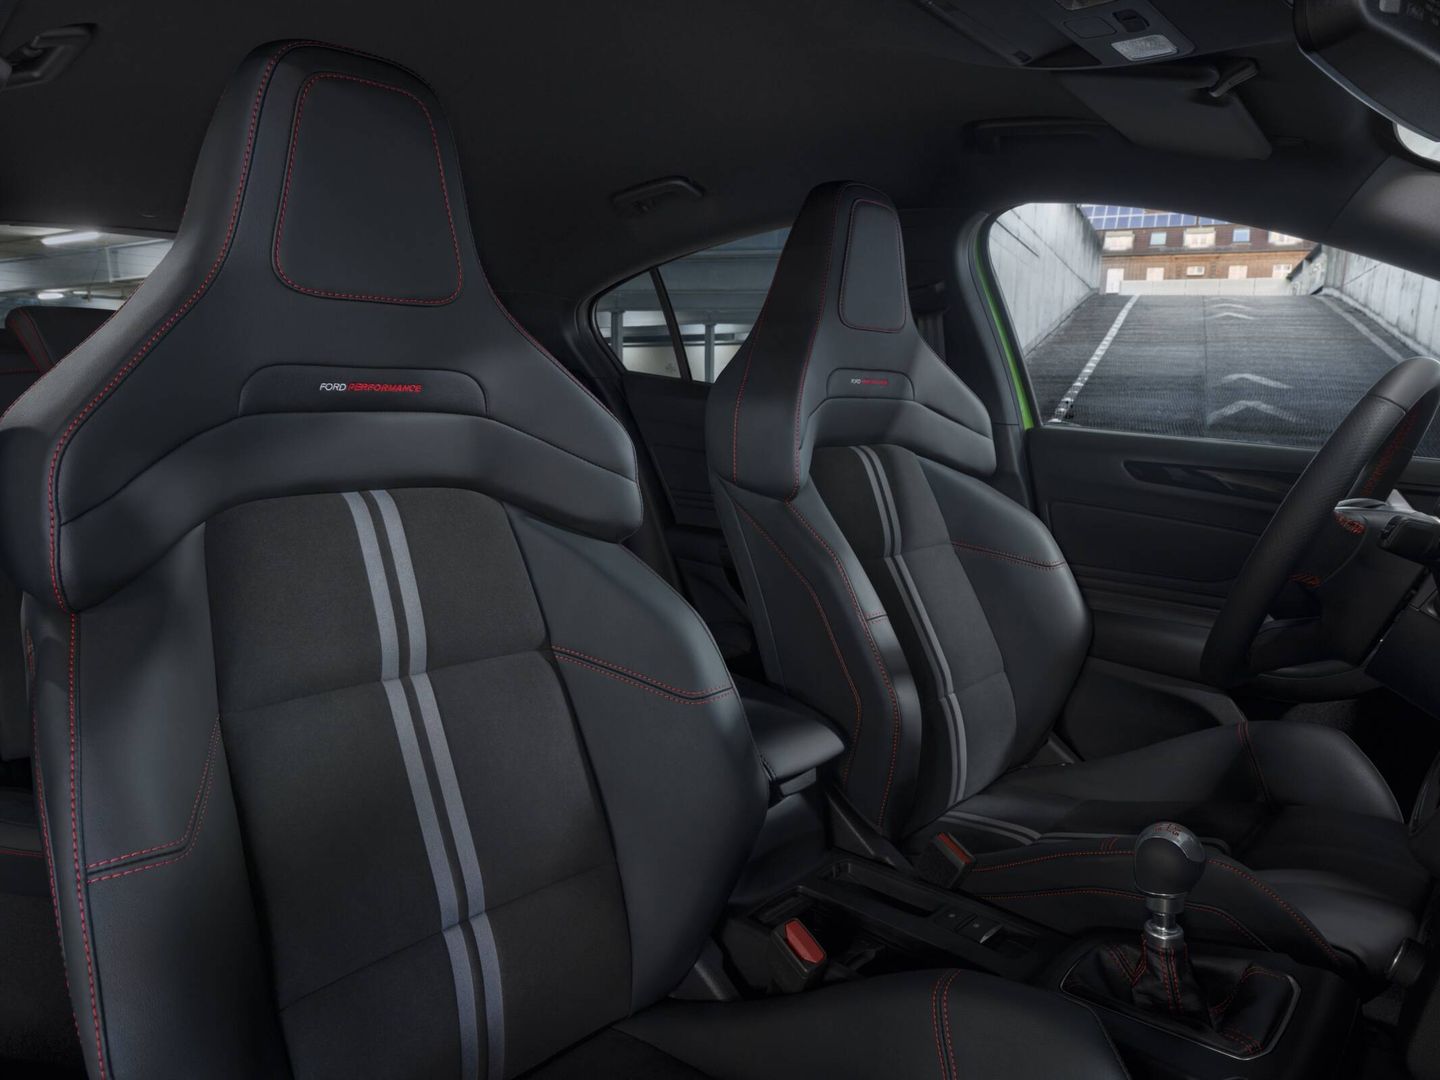 Los nuevos asientos Performance de la versión deportiva ST, que rinde 280 CV, son un desarrollo propio de la marca del óvalo.